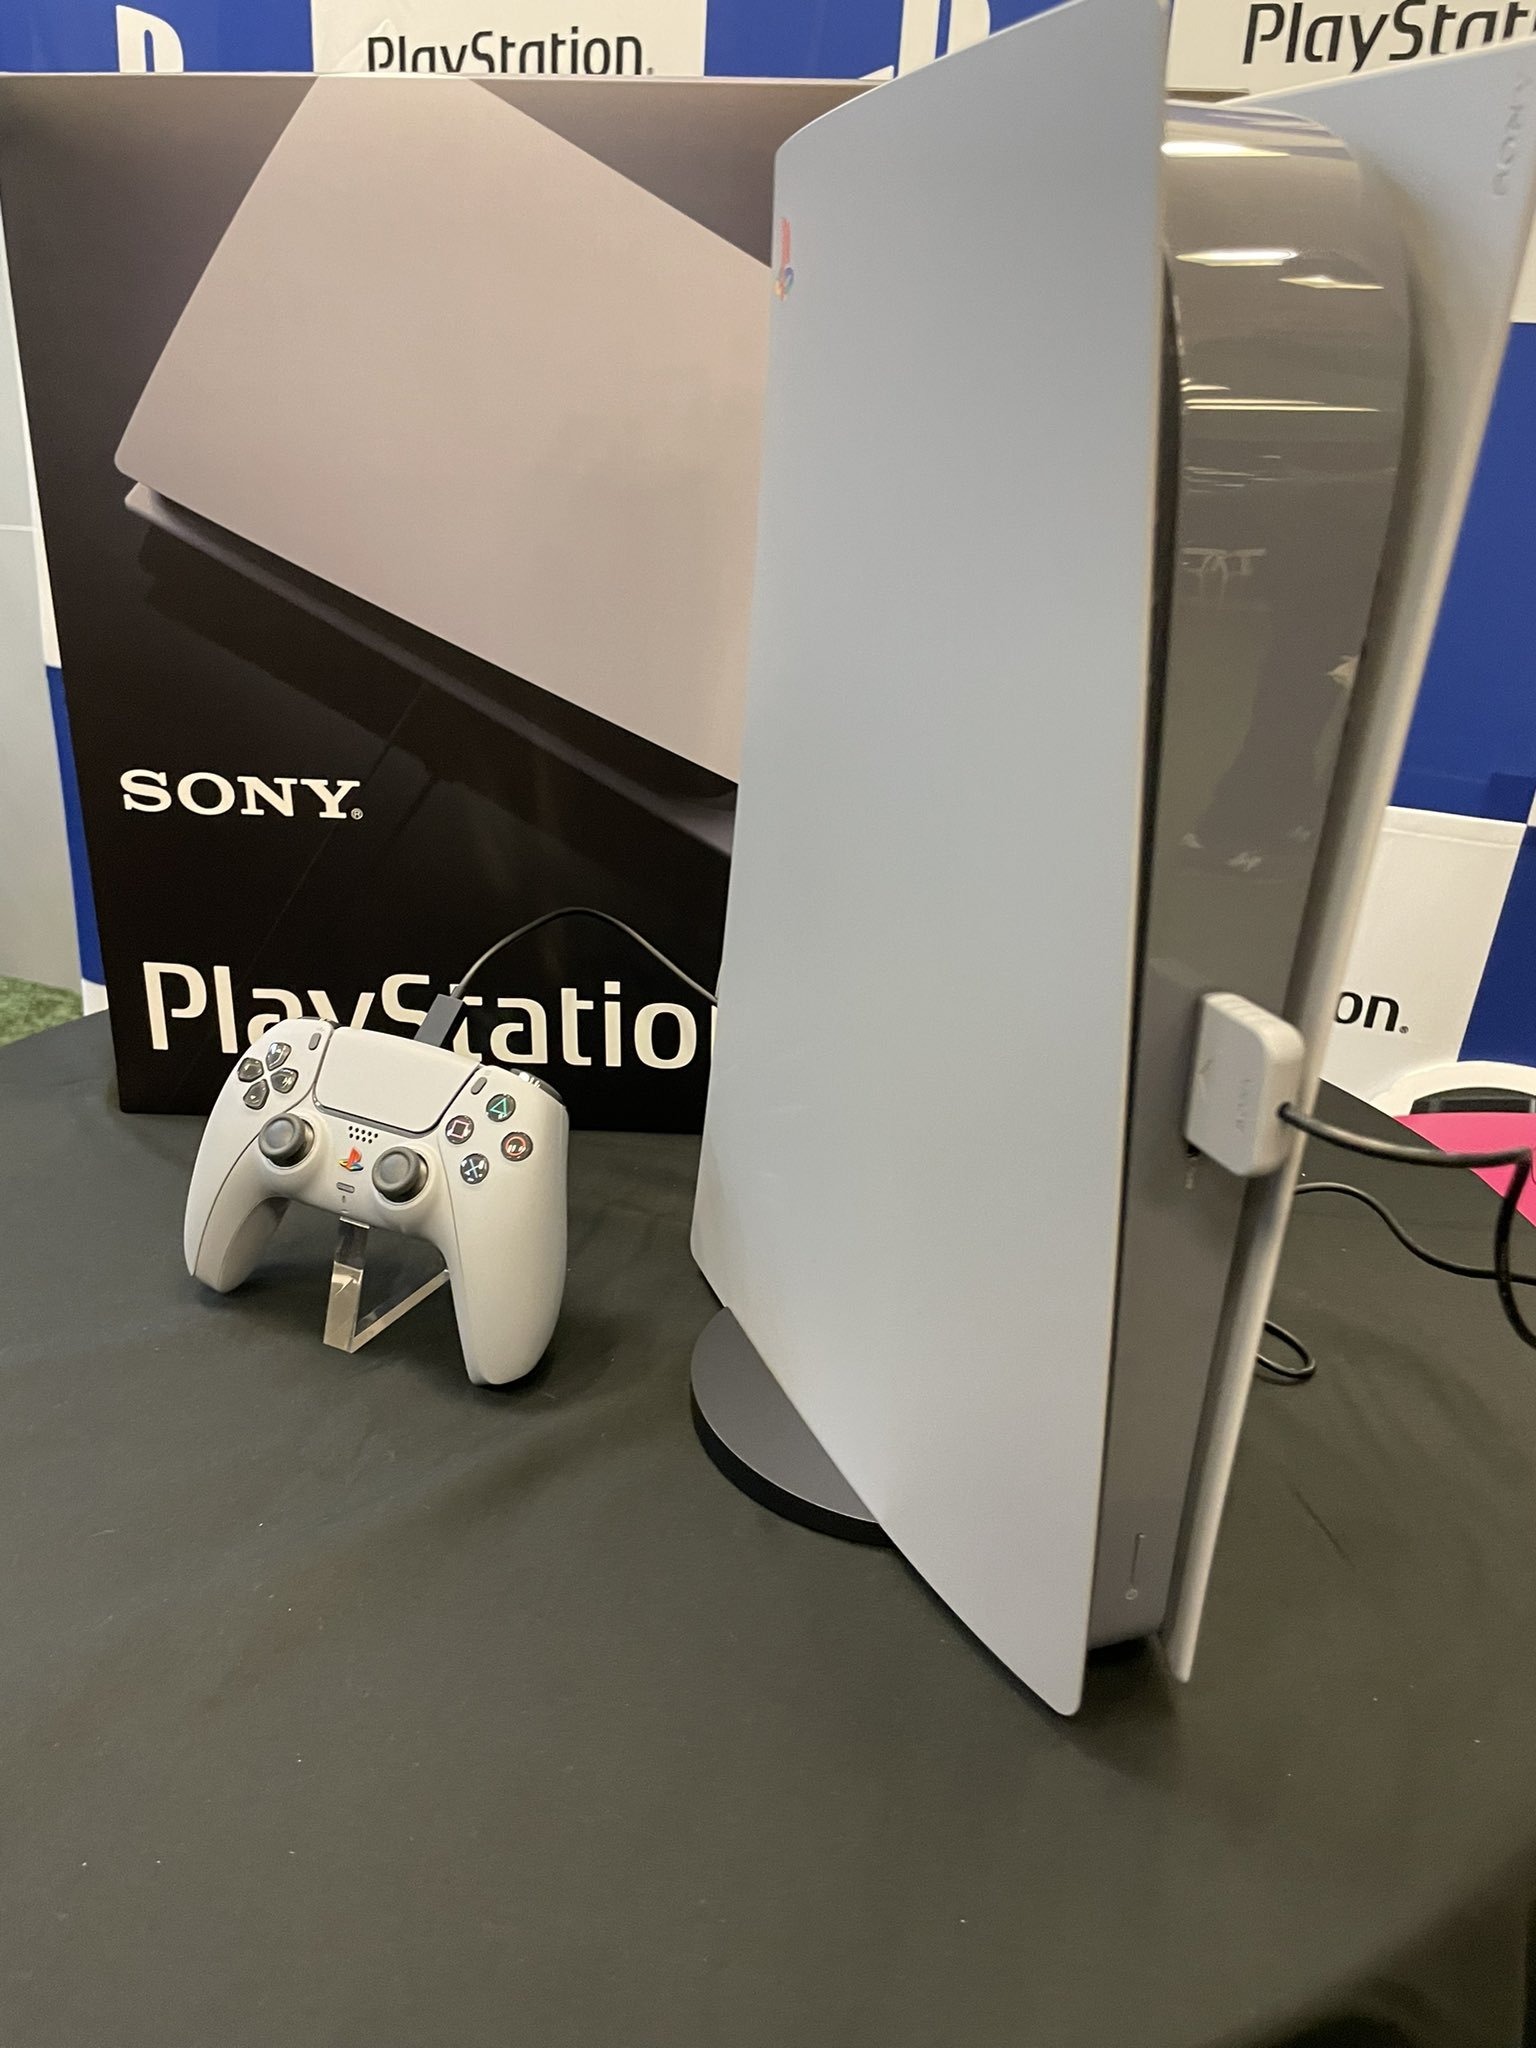 PlayStation 5 Pro: Vazam detalhes incríveis sobre a nova